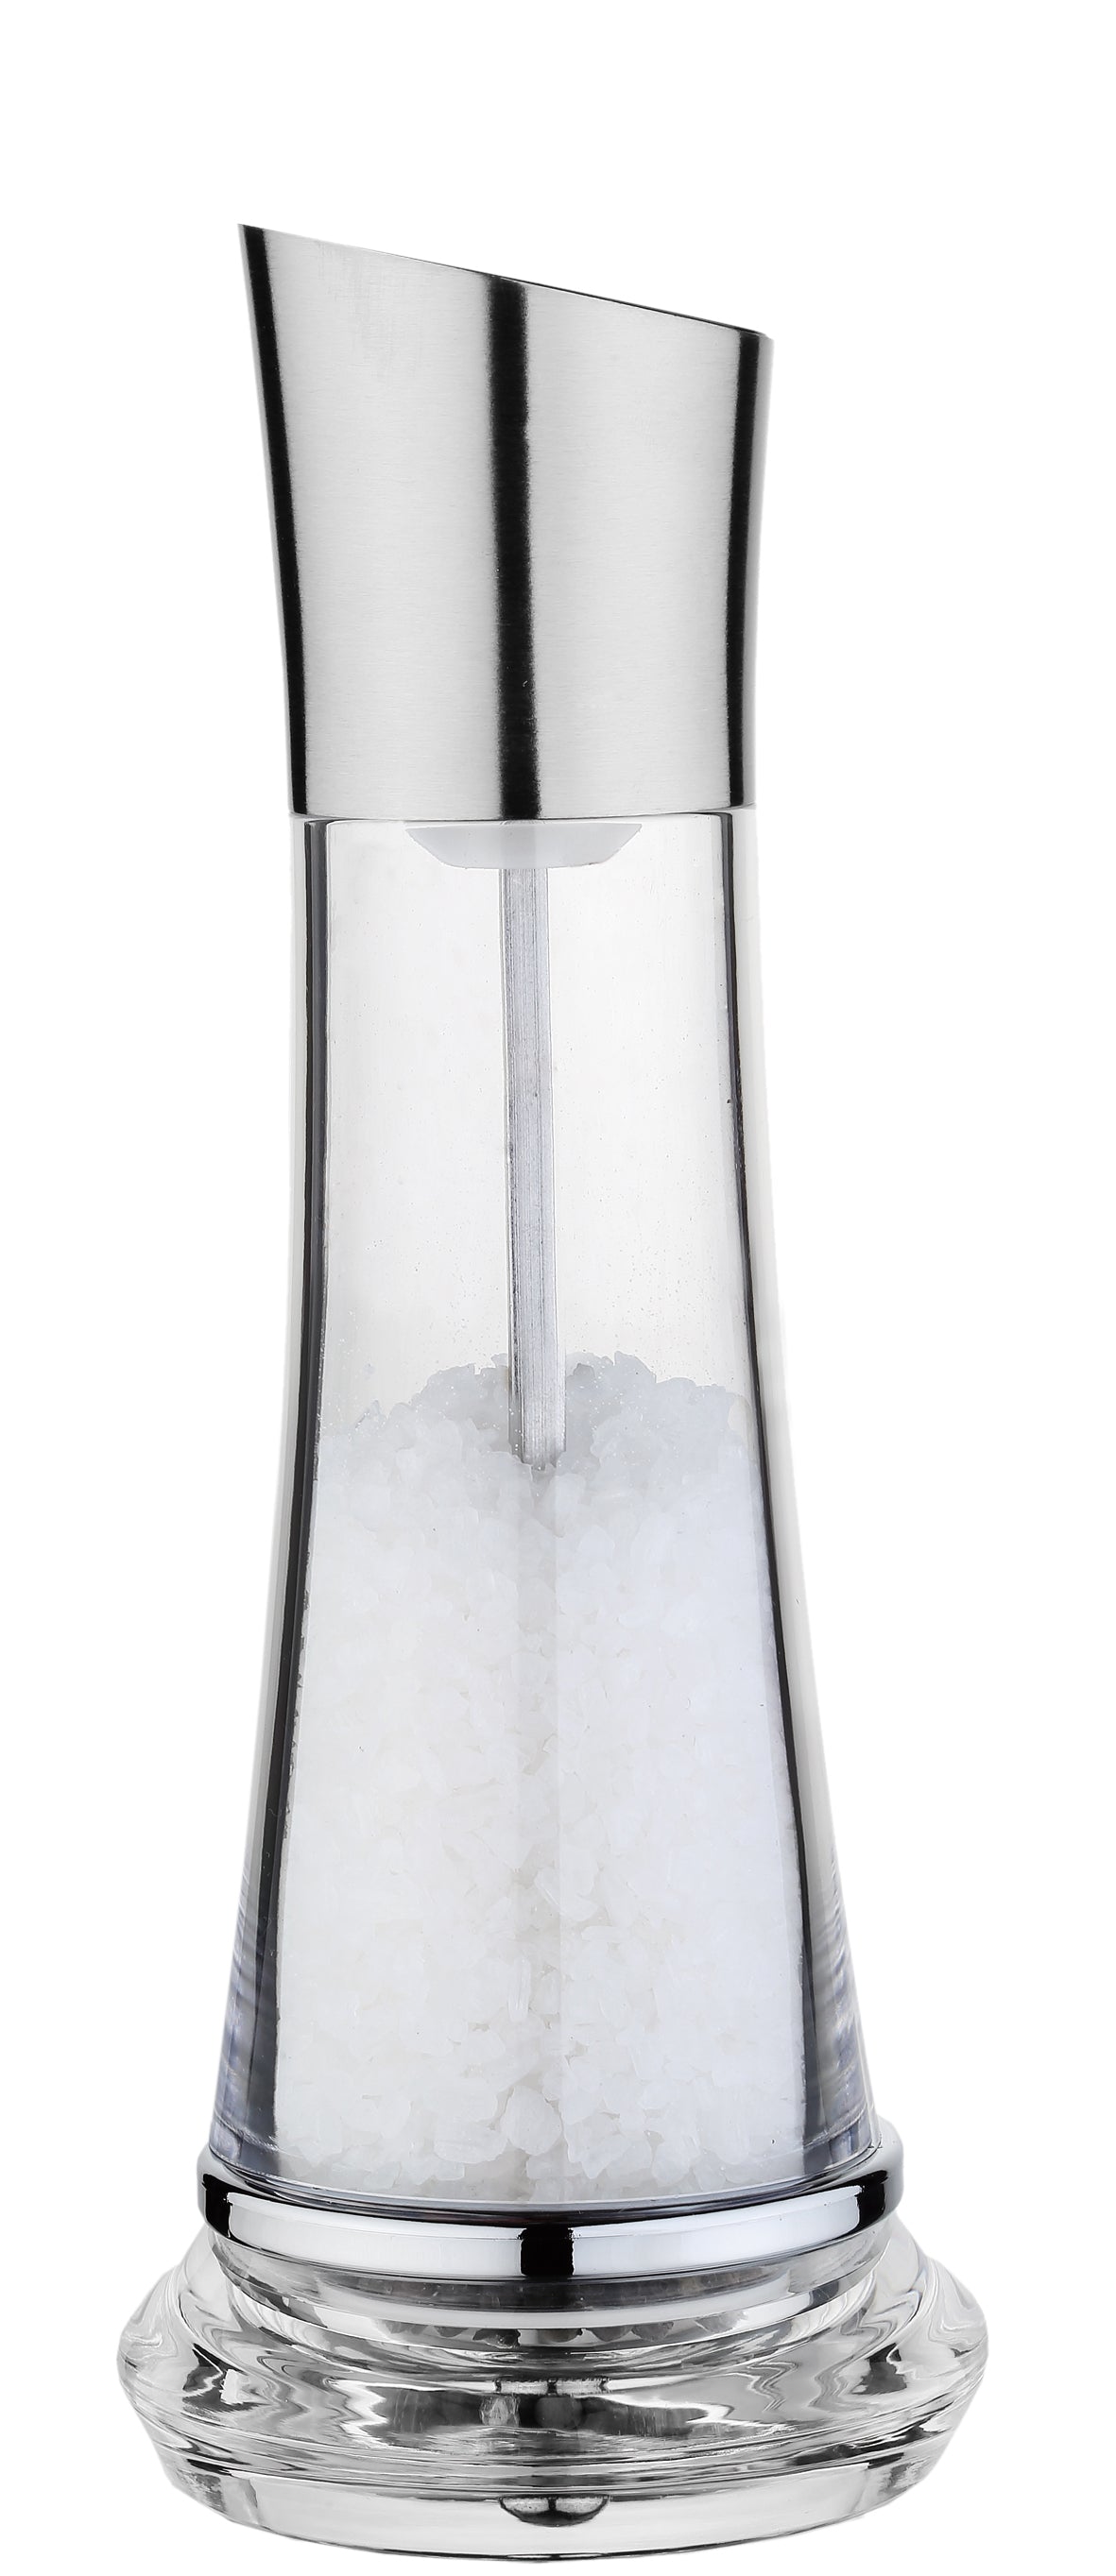 Moulin à sel, poivre ou graines de lin Cuisinox